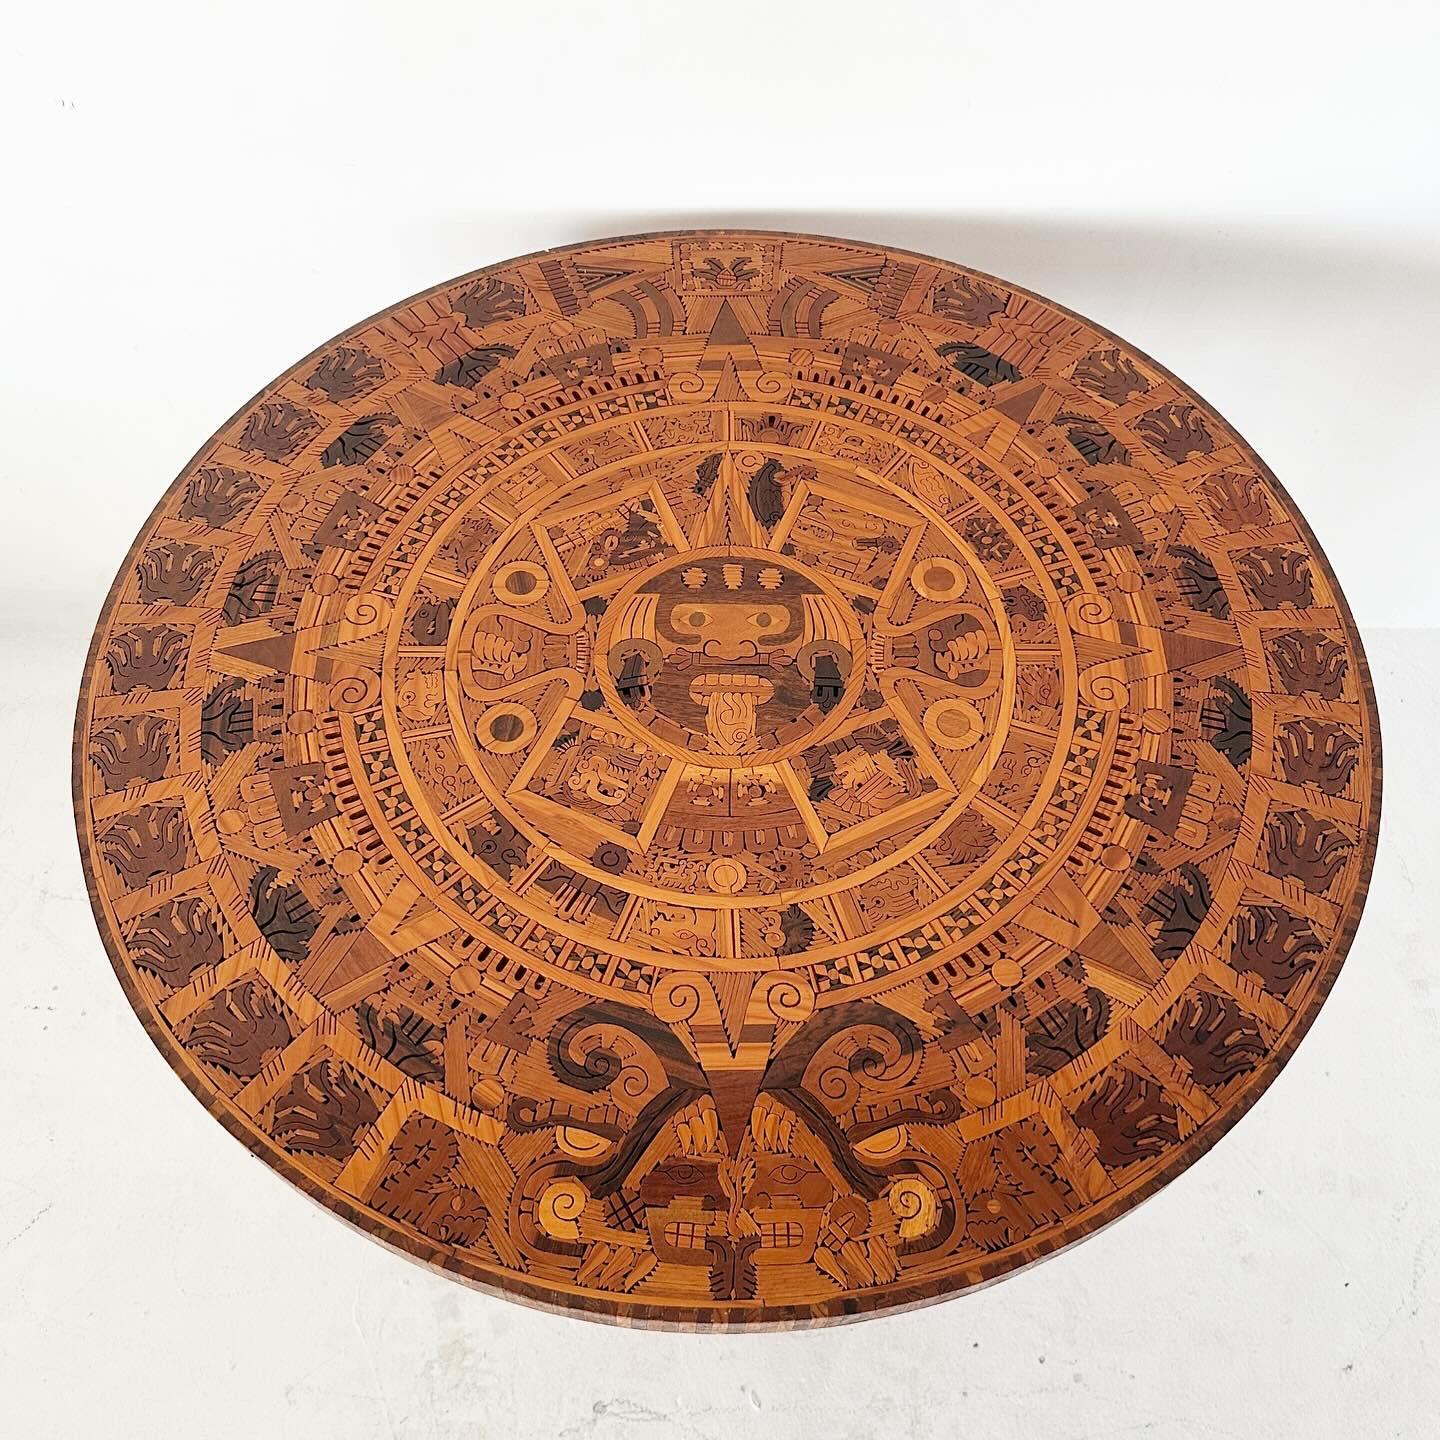 Handgefertigter runder Aztekenkalender-Esstisch mit Holzintarsien. Unglaubliche Details, guter Vintage-Zustand. Die runde Platte lässt sich zum einfachen Transport vom Massivholzsockel trennen.

H28,5 Durchmesser 40,5 (Sitzhöhe)